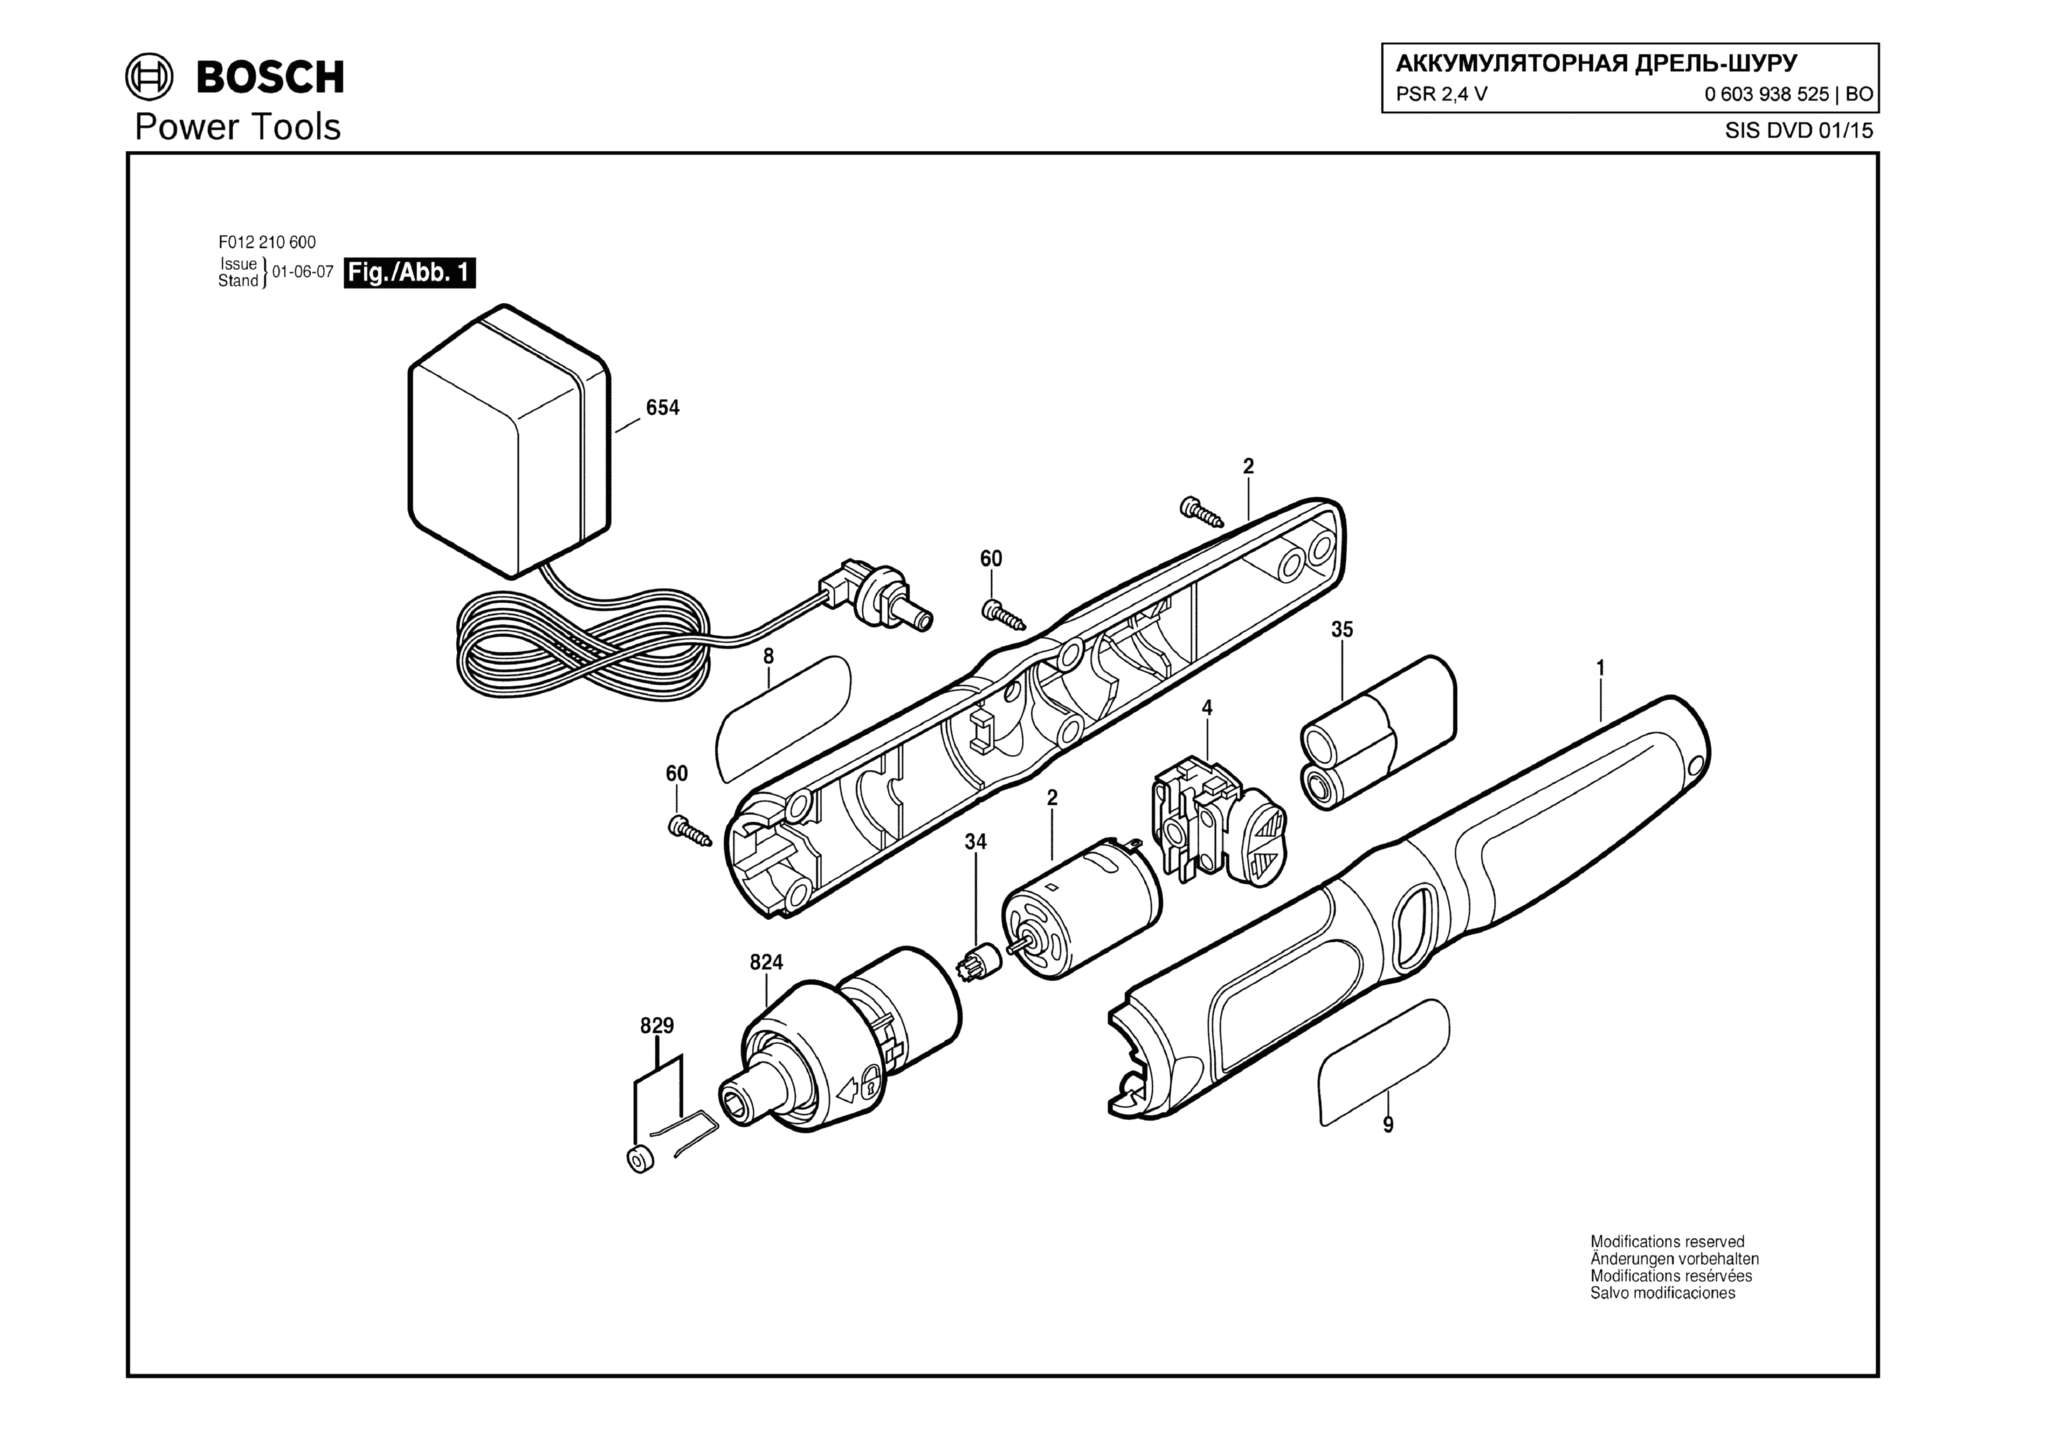 Запчасти, схема и деталировка Bosch PSR 2,4 V (ТИП 0603938525)